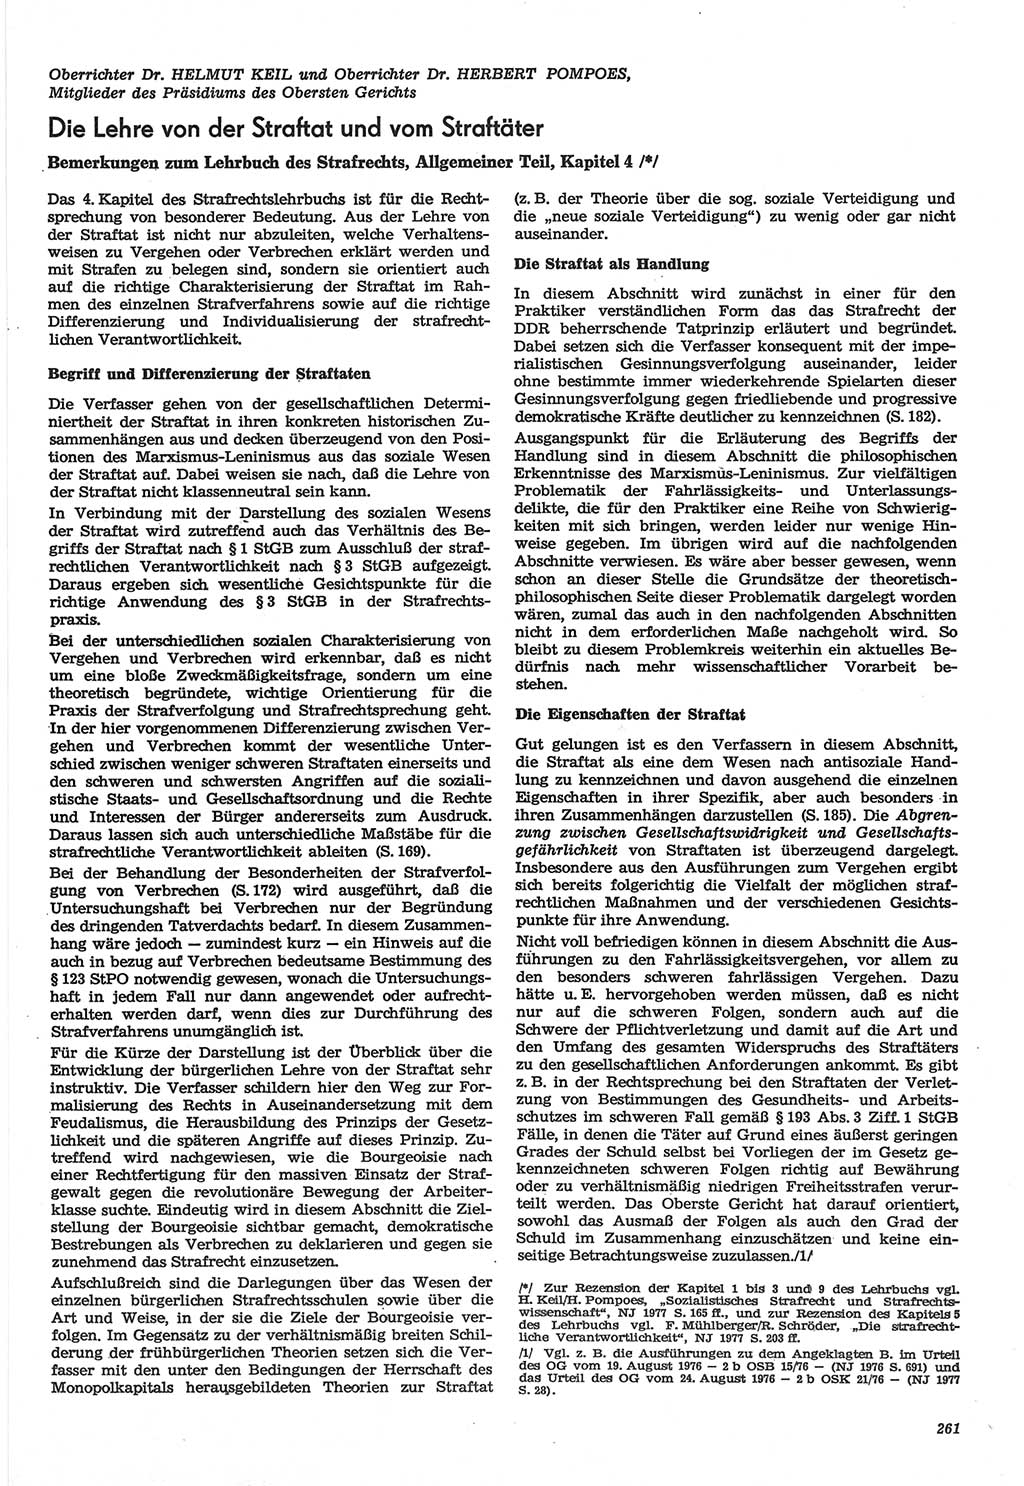 Neue Justiz (NJ), Zeitschrift für Recht und Rechtswissenschaft-Zeitschrift, sozialistisches Recht und Gesetzlichkeit, 31. Jahrgang 1977, Seite 261 (NJ DDR 1977, S. 261)